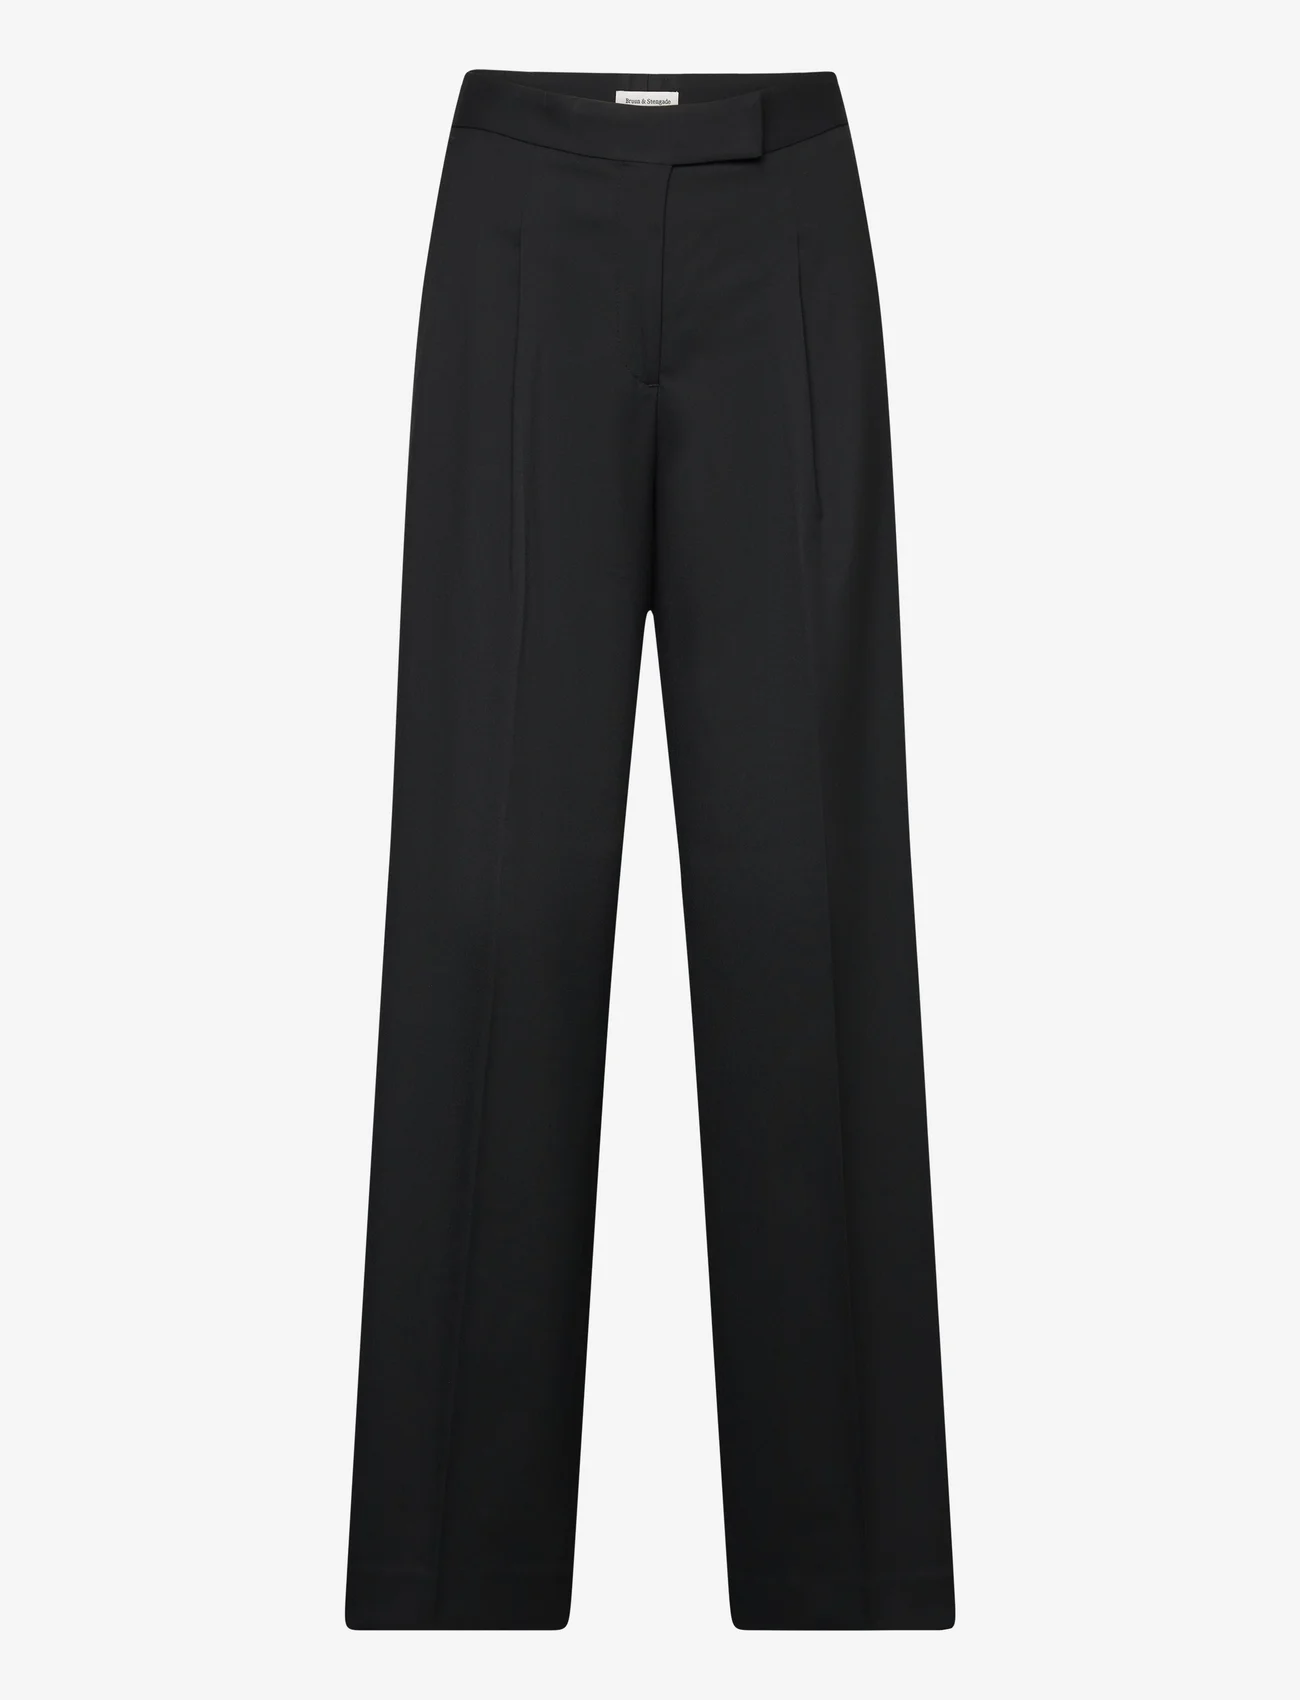 Bruun & Stengade - BS Berthe Suit Pants - formele broeken - black - 0